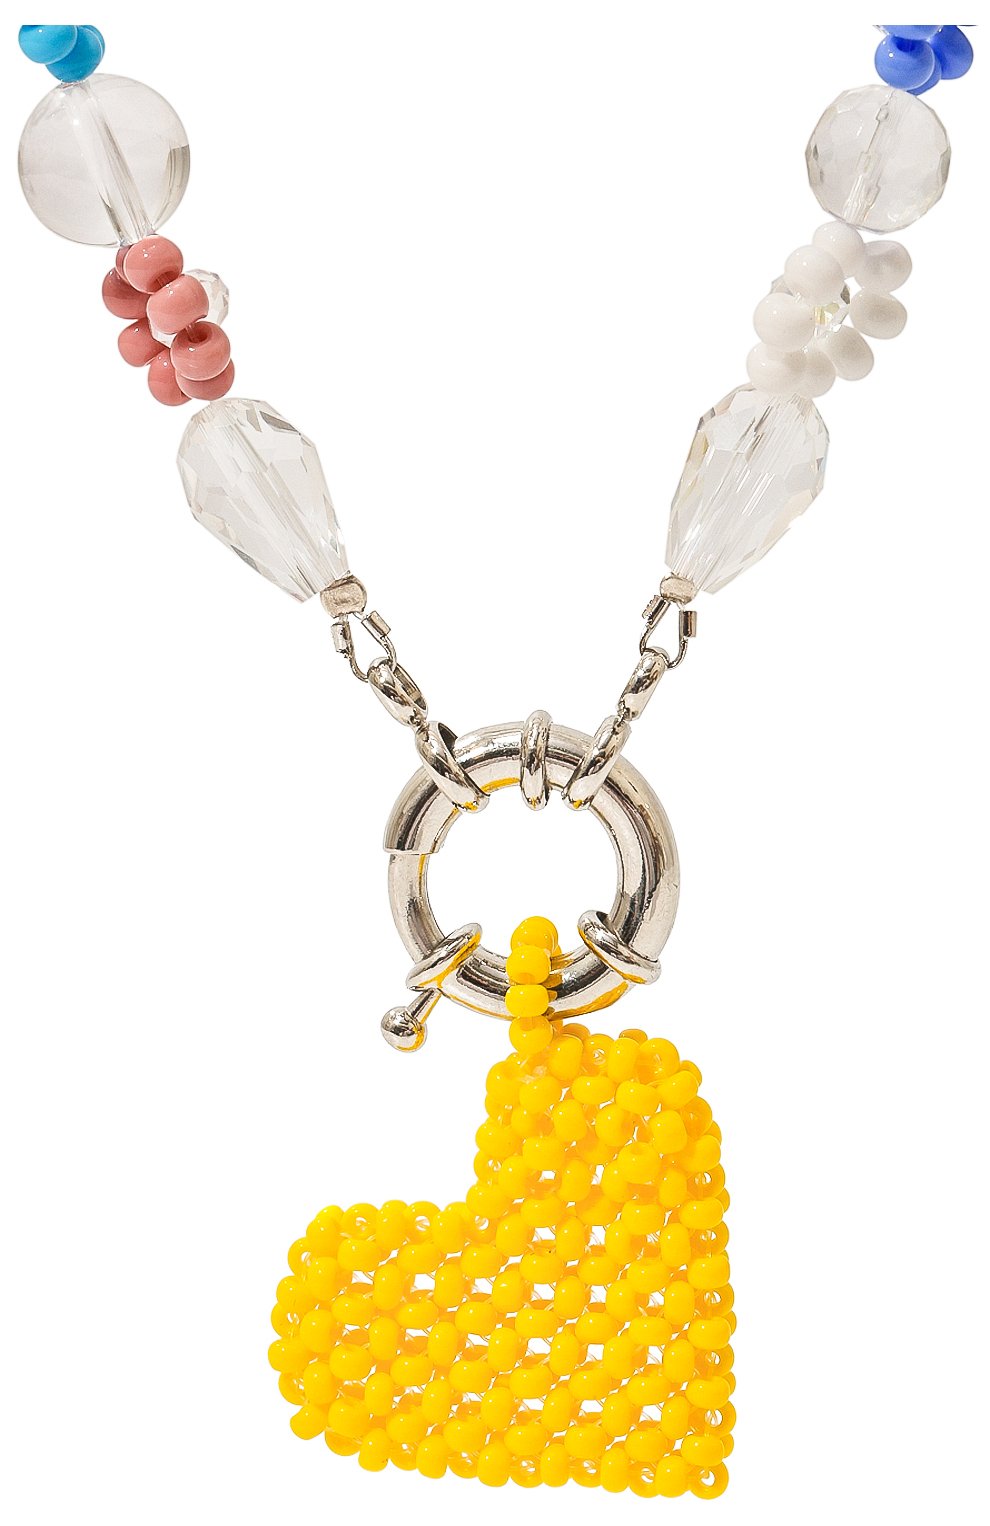 Женское желтое колье сердце HIAYNDERFYT купить в интернет-магазине ЦУМ,арт. 1-5YTEN